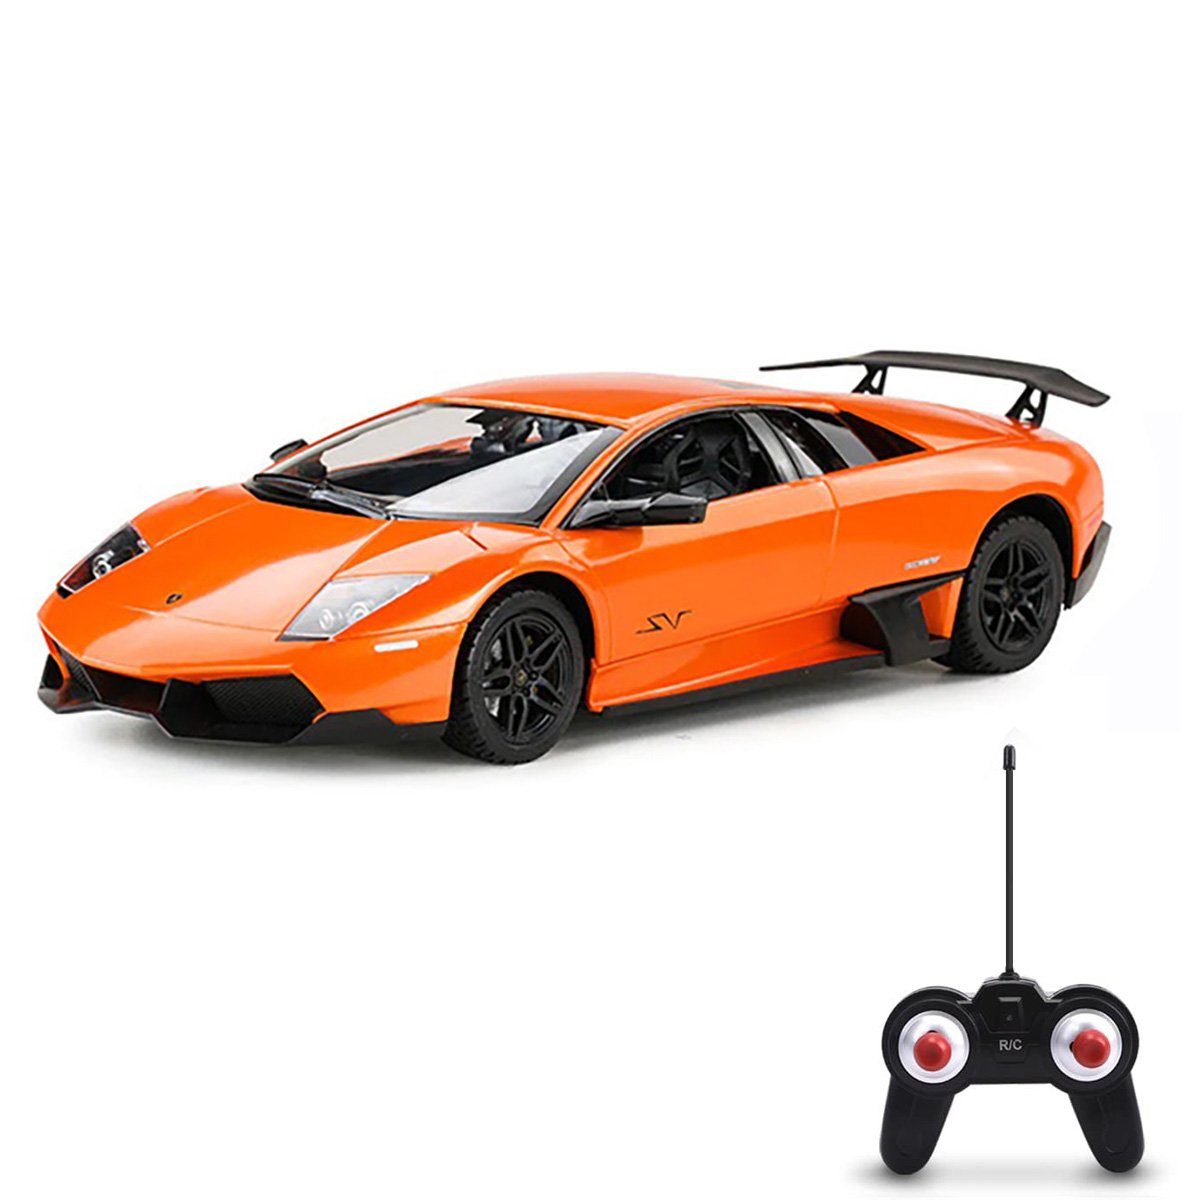 Masina cu telecomanda, Suncon, Lamborghini 670, 1:24, Portocaliu